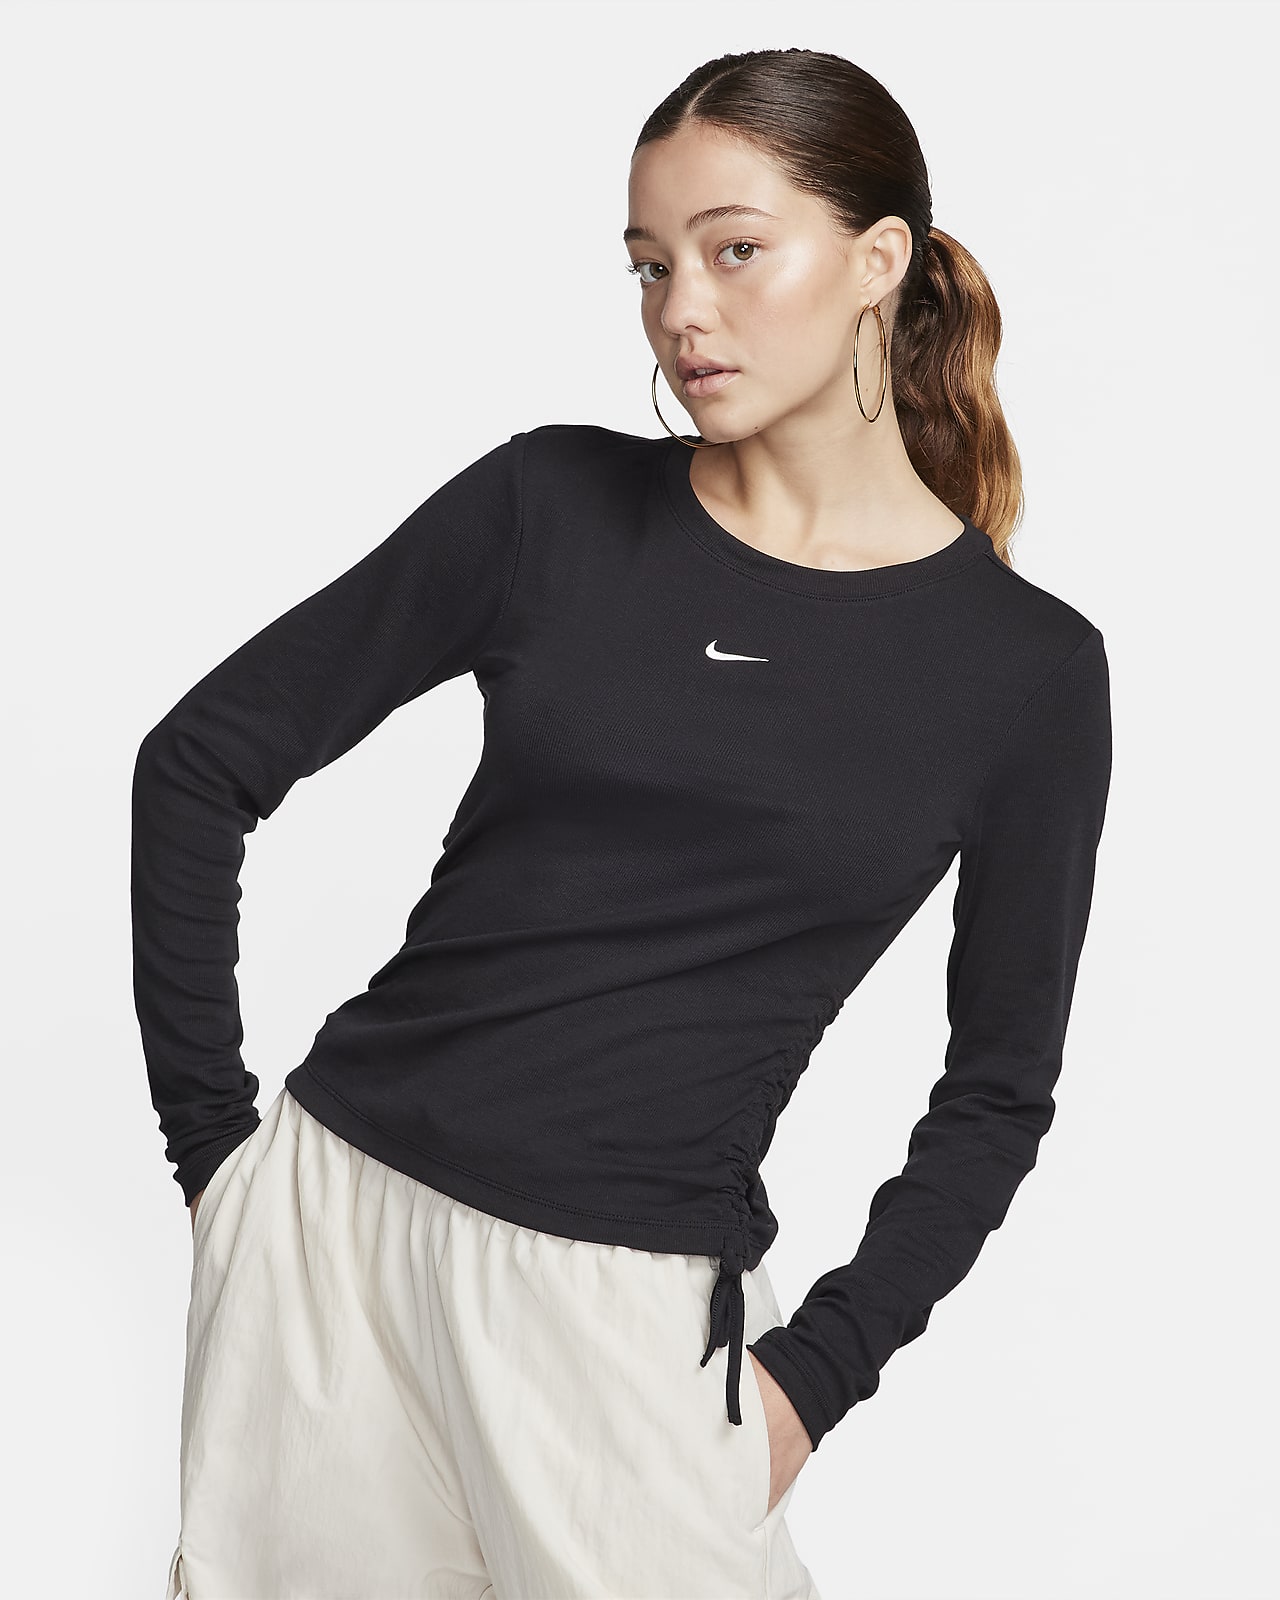 Maglia moderna corta a manica lunga Nike Sportswear Essential – Donna